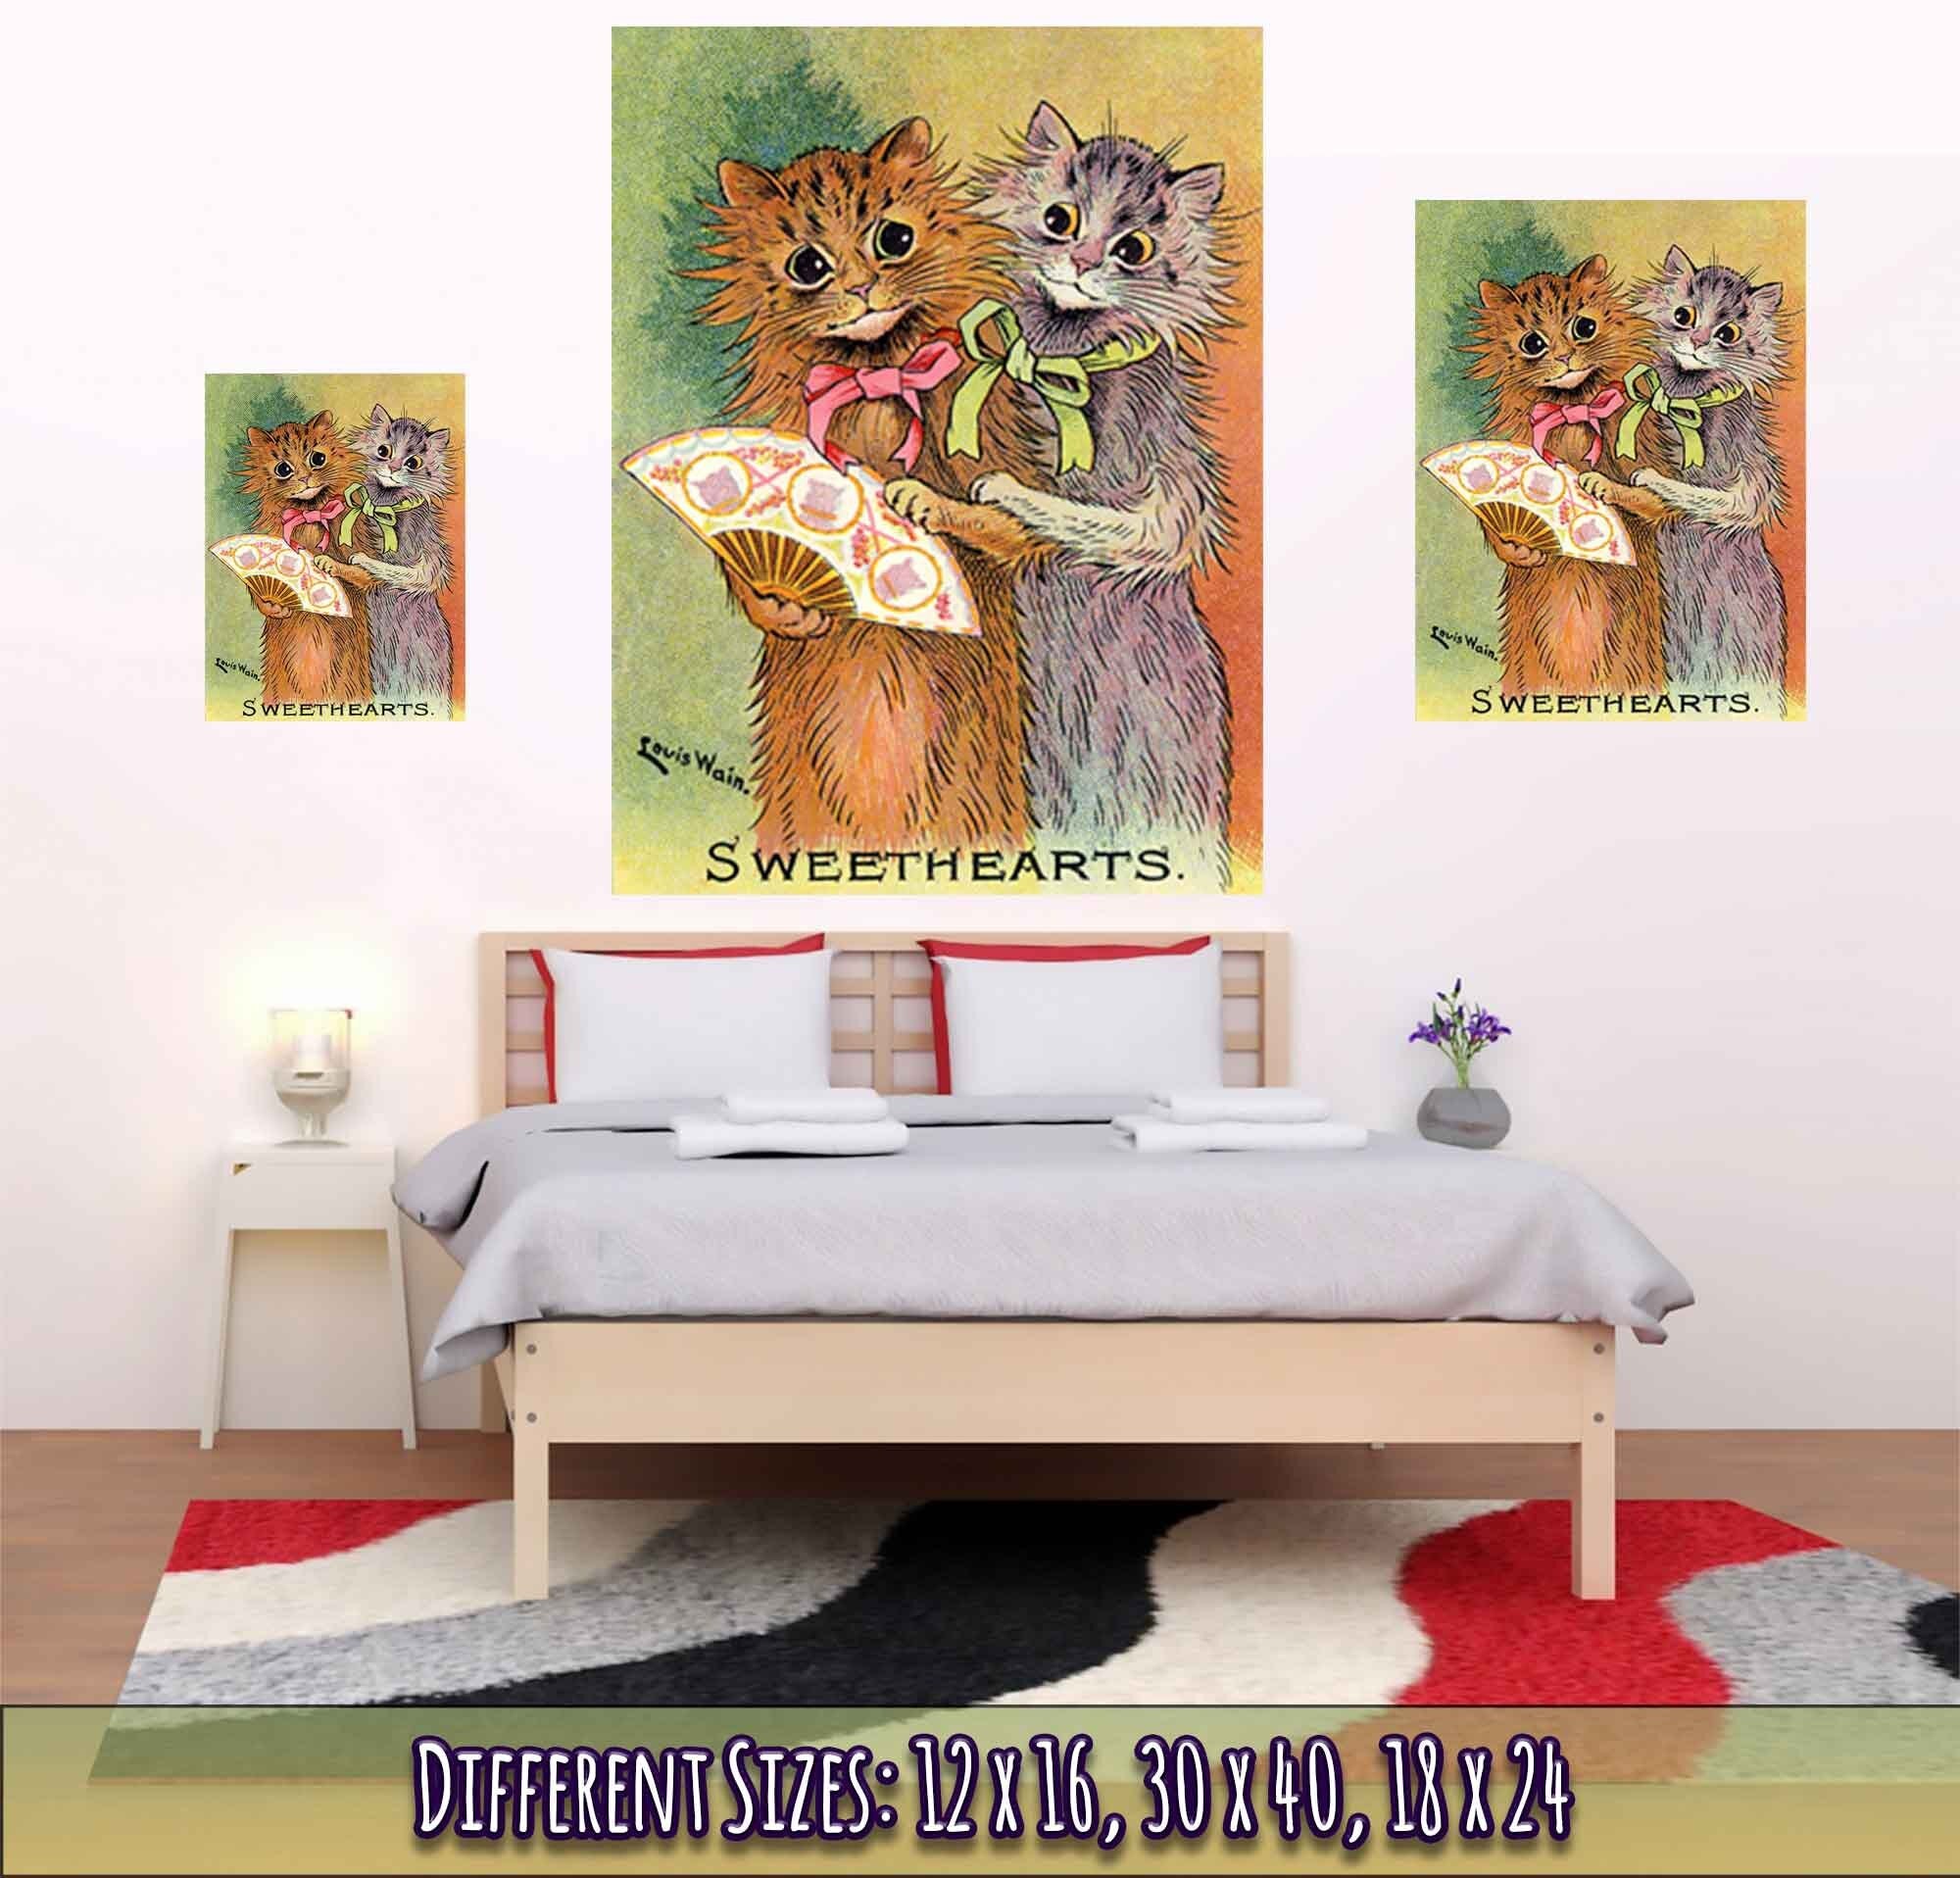 Louis Wain Print - Sweethearts Cats - Louis Wain Cat Poster, Cats With Fan - WallArtPrints4U